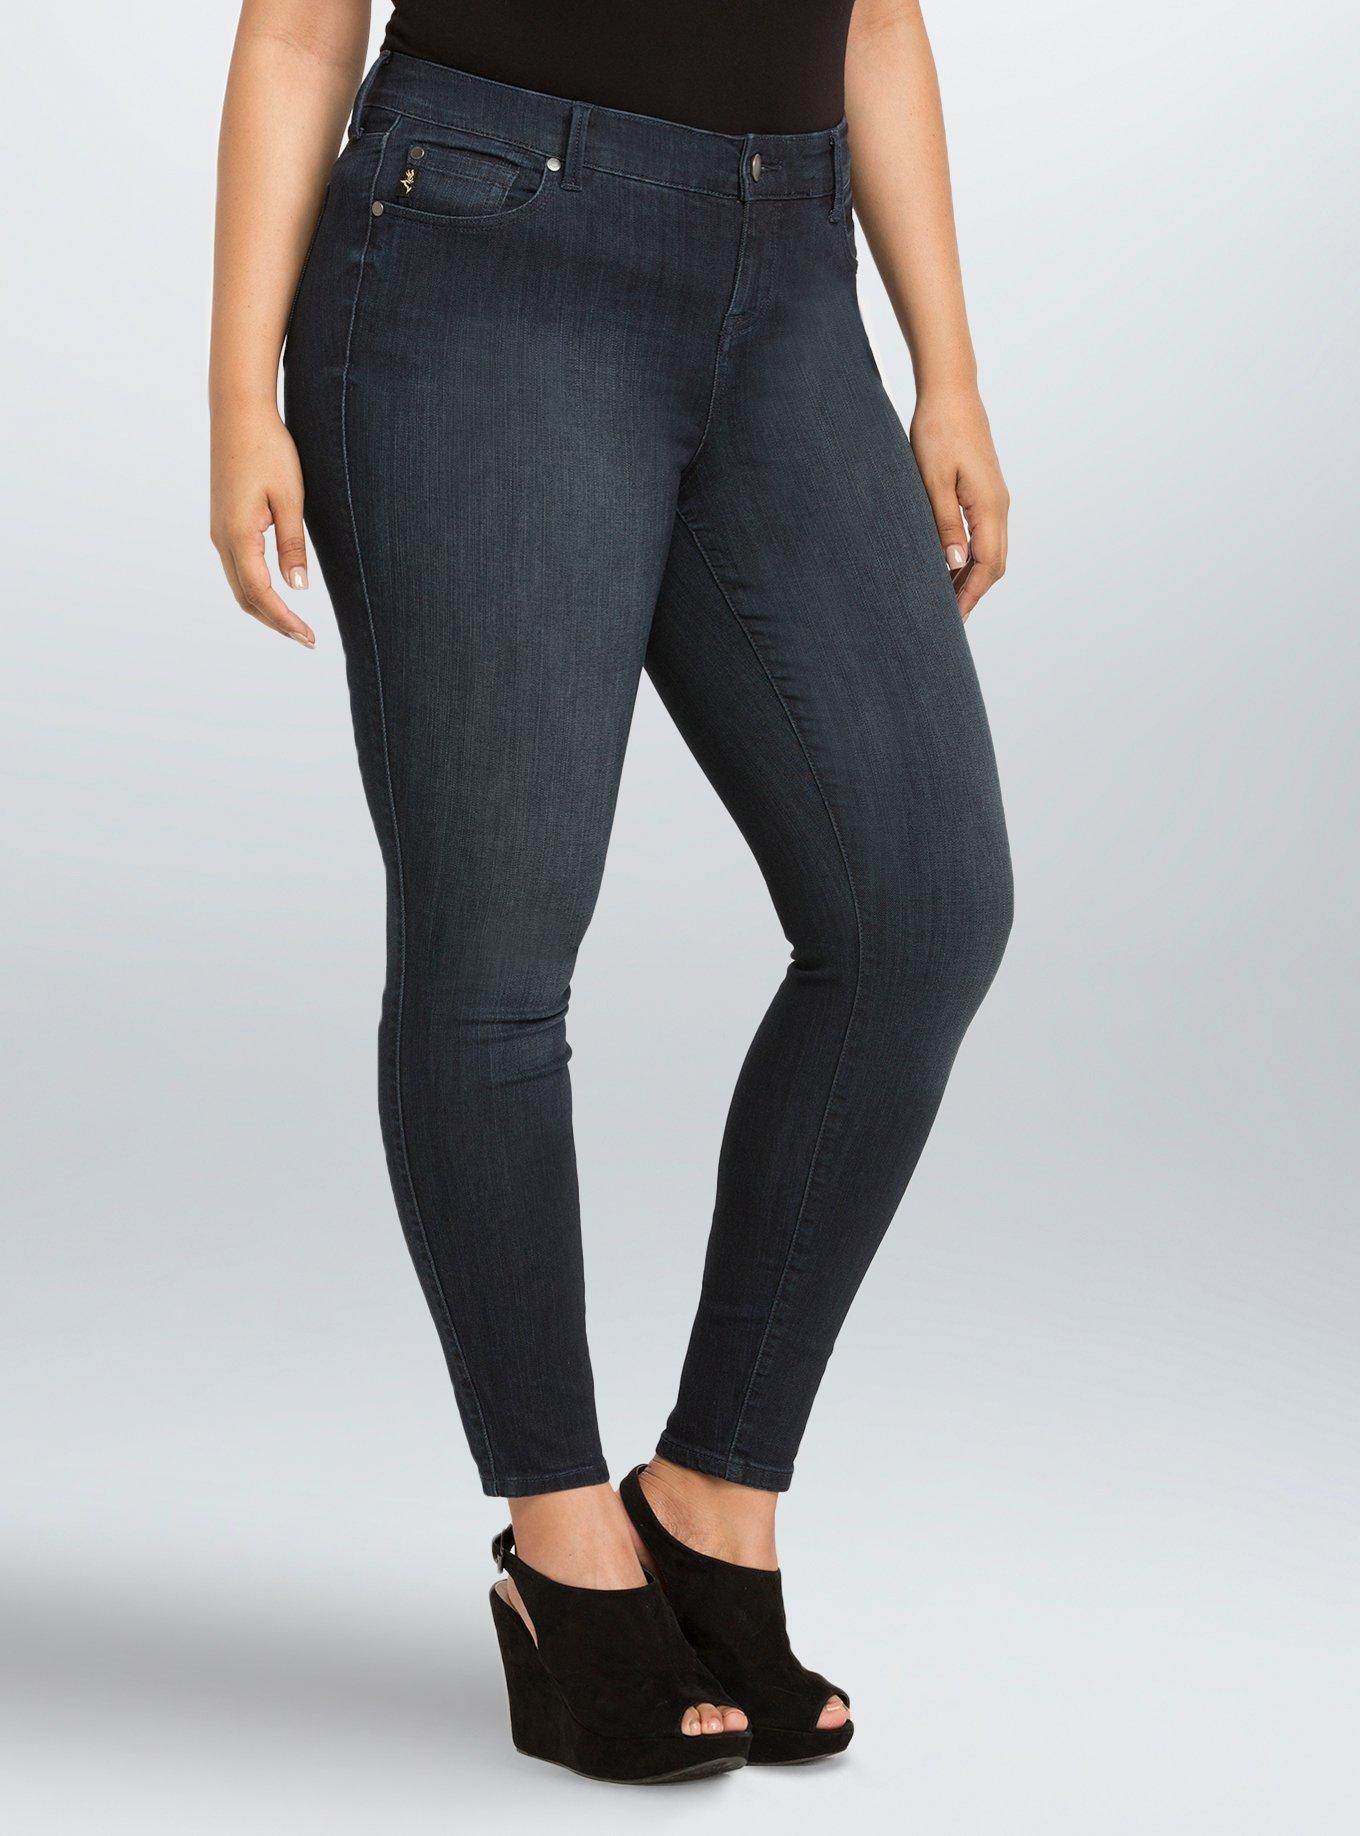 Plus Size Torrid Premium Ultra Skinny Jeans - Dark Wash (Regular) - Torrid